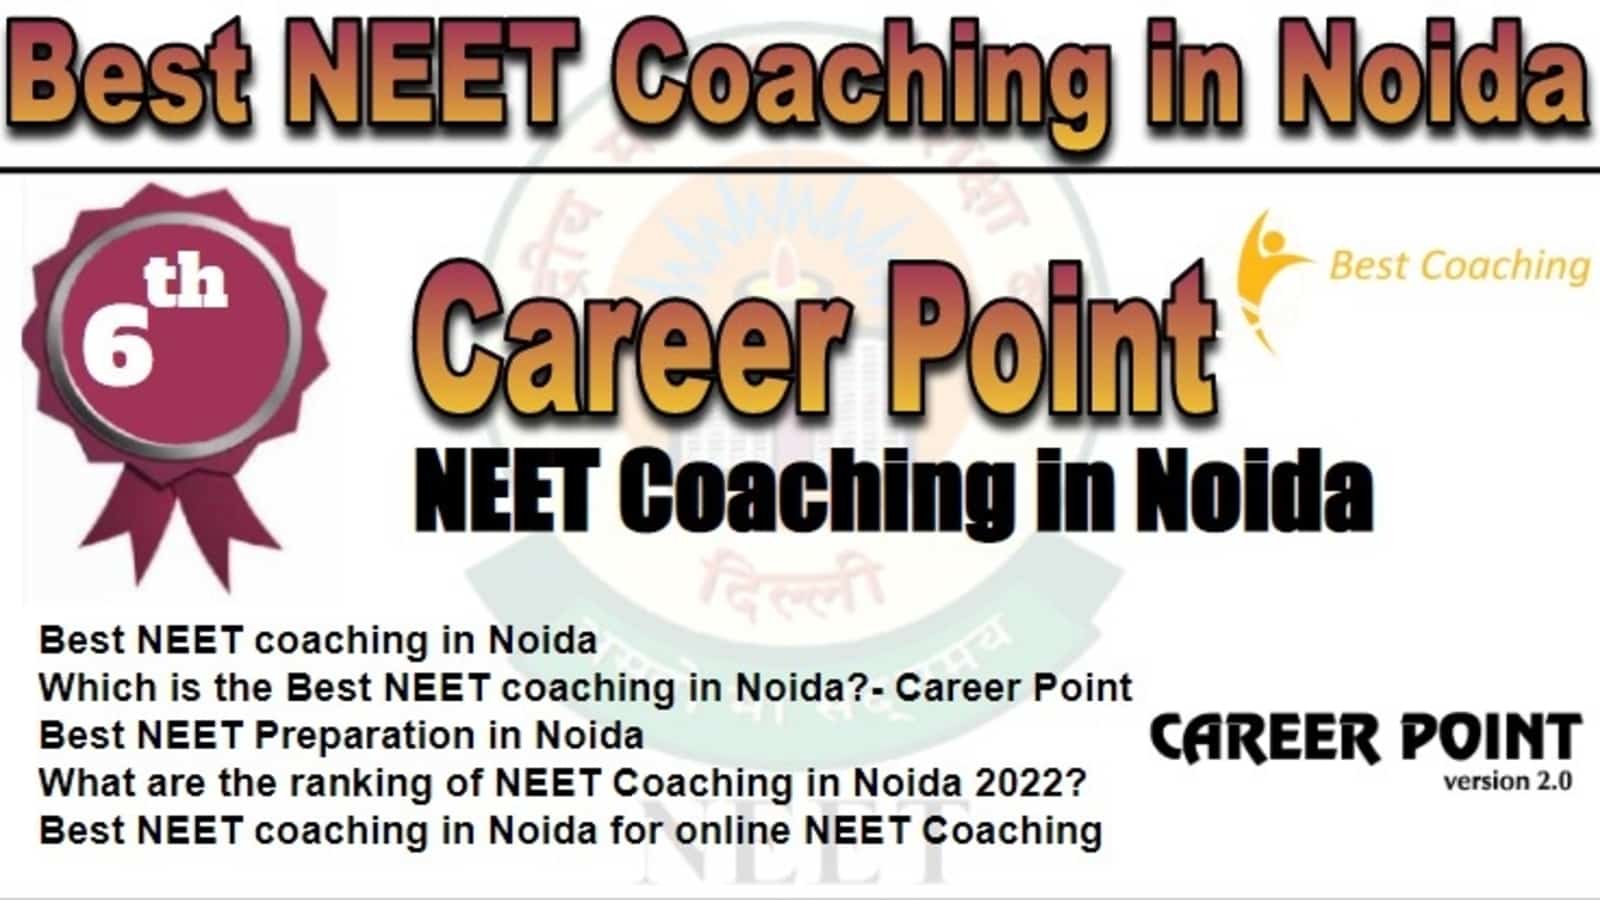 Rank 6 Best NEET Coaching in Noida